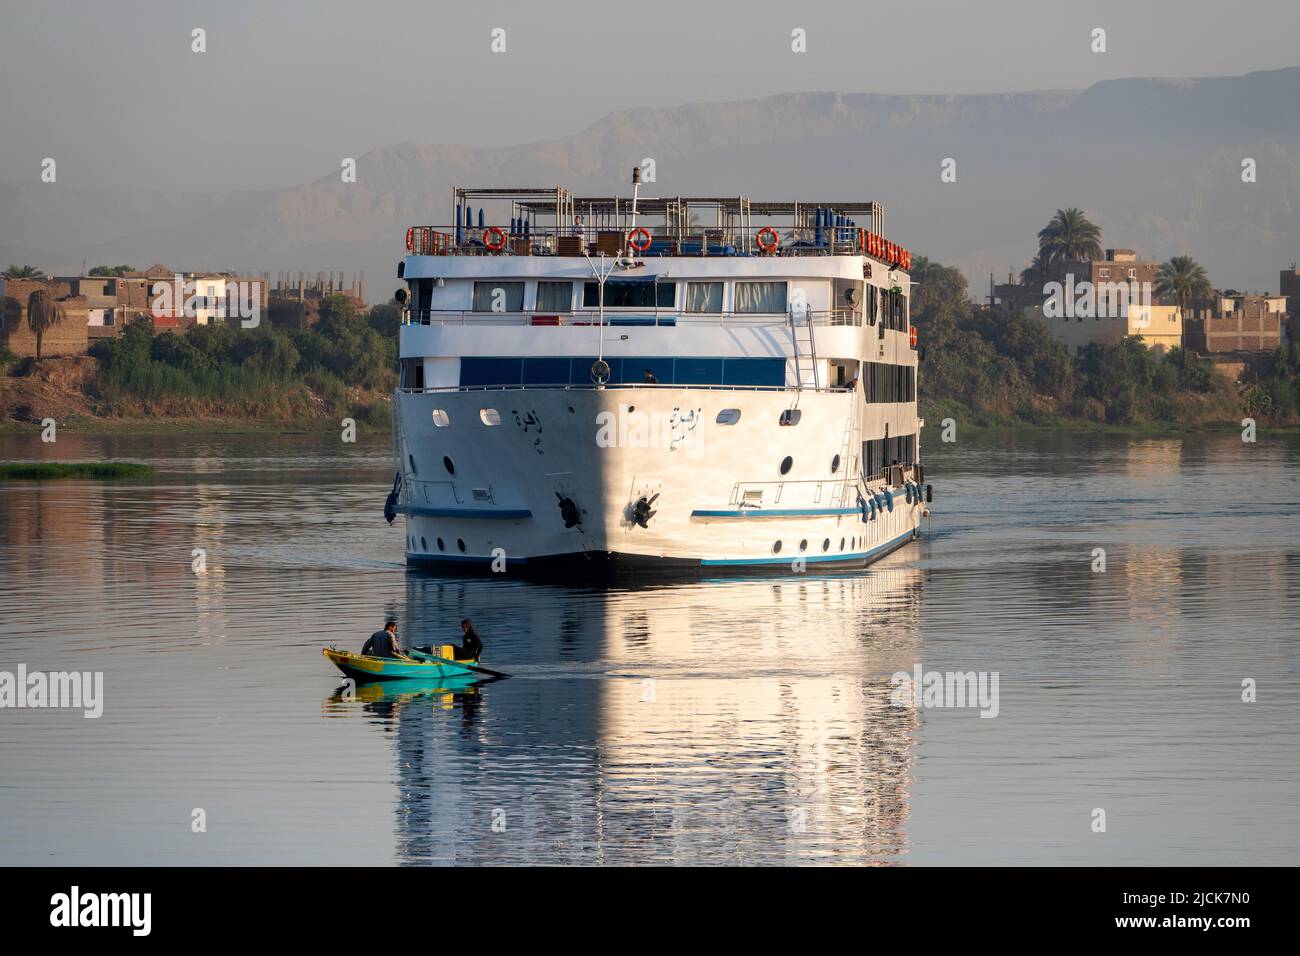 Bateau de croisière sur le Nil naviguant sur l'eau calme avec des réflexions en début de matinée lumière se dirigeant directement vers un petit bateau de pêche de deux hommes et caméra Banque D'Images